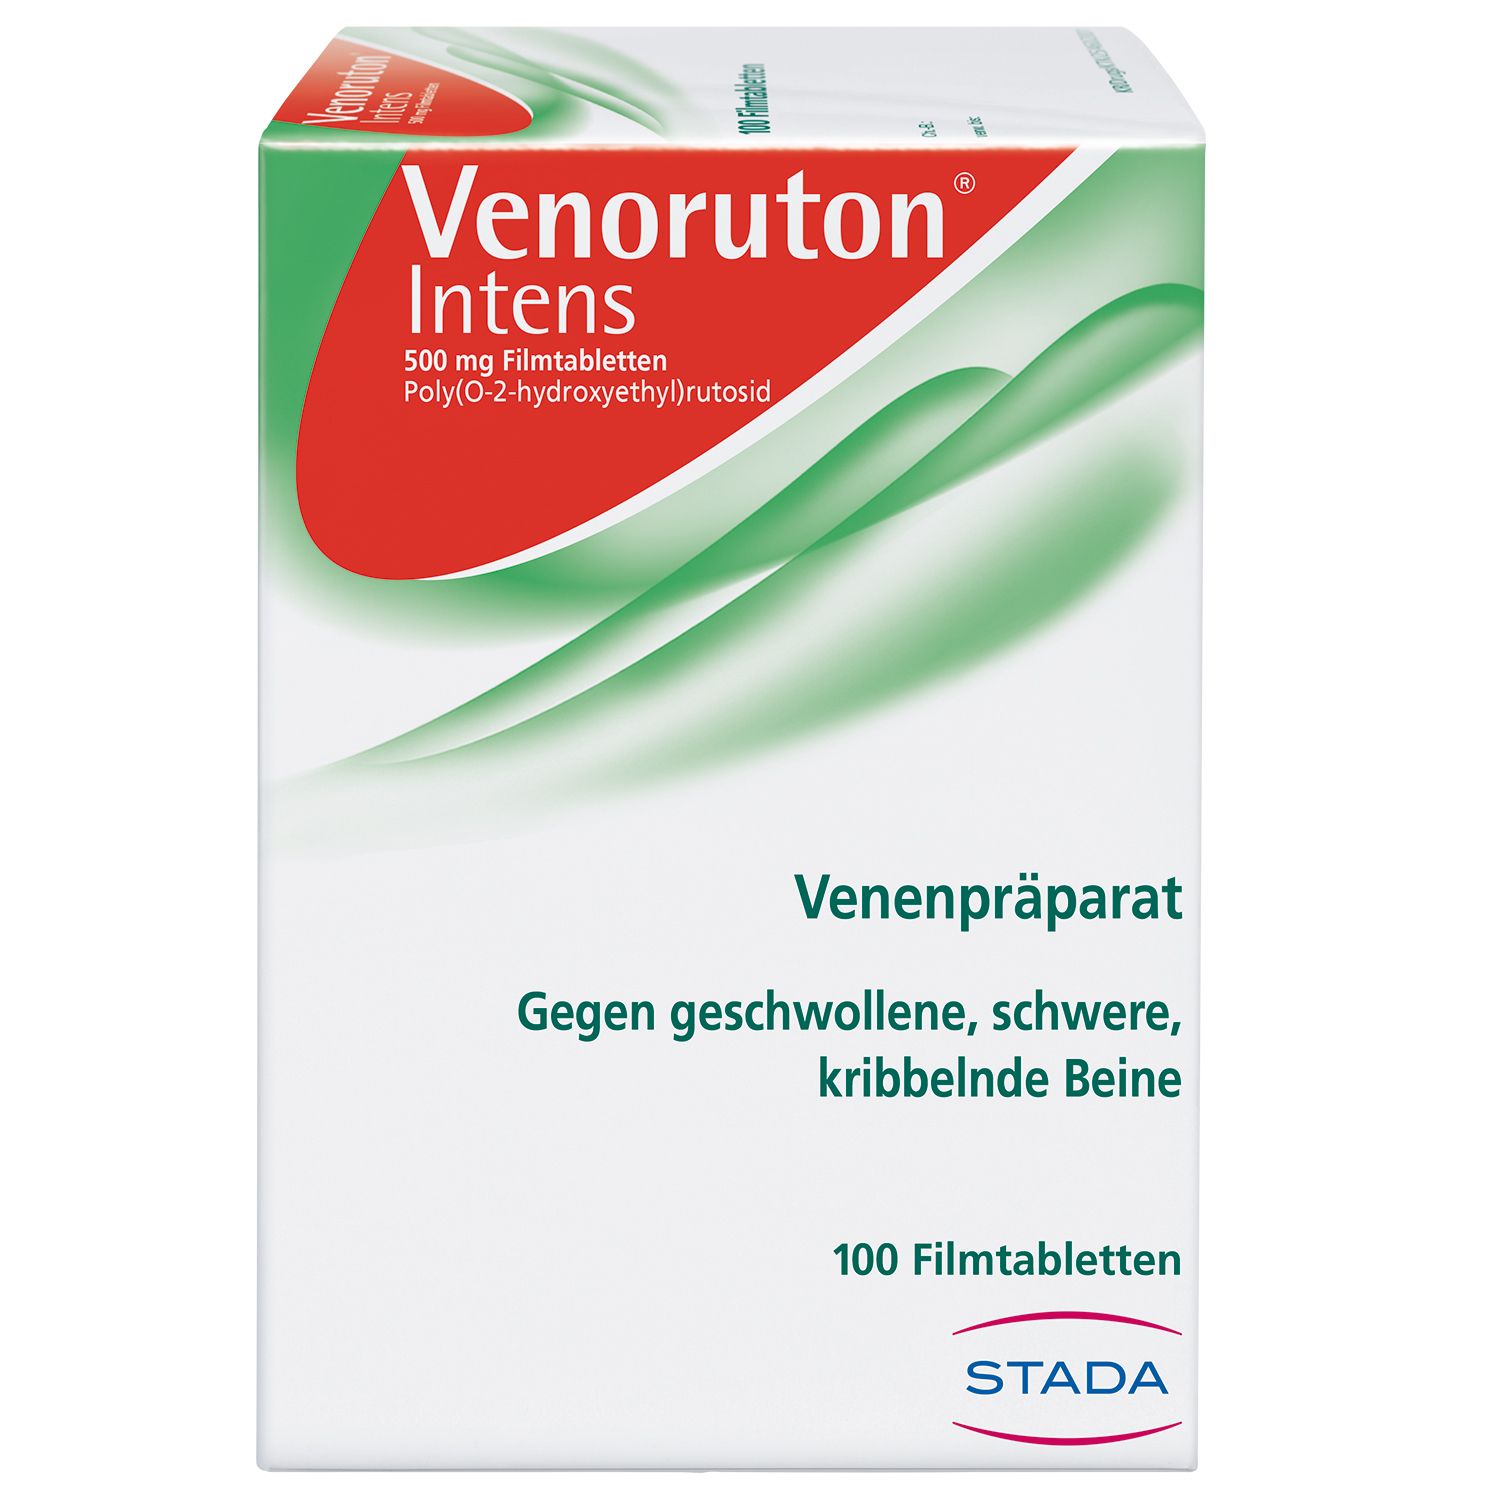 Venoruton® Intens